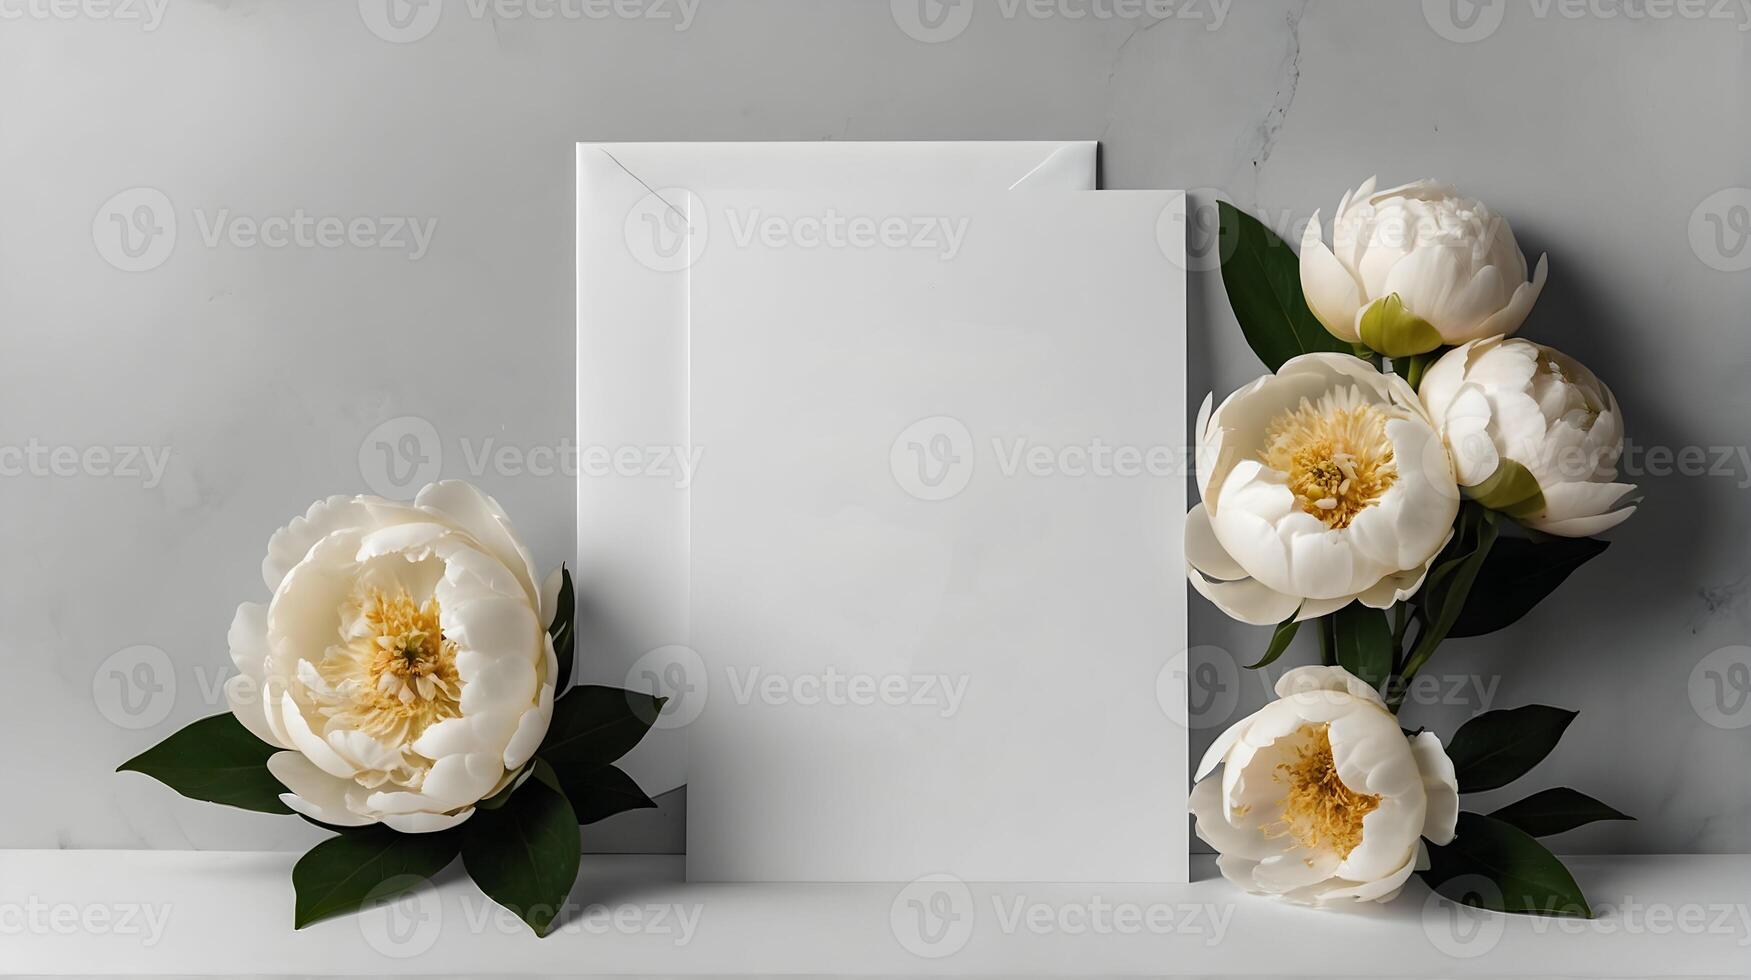 Casamento convite brincar com branco peônias, em branco Folha do papel com cópia de espaço foto